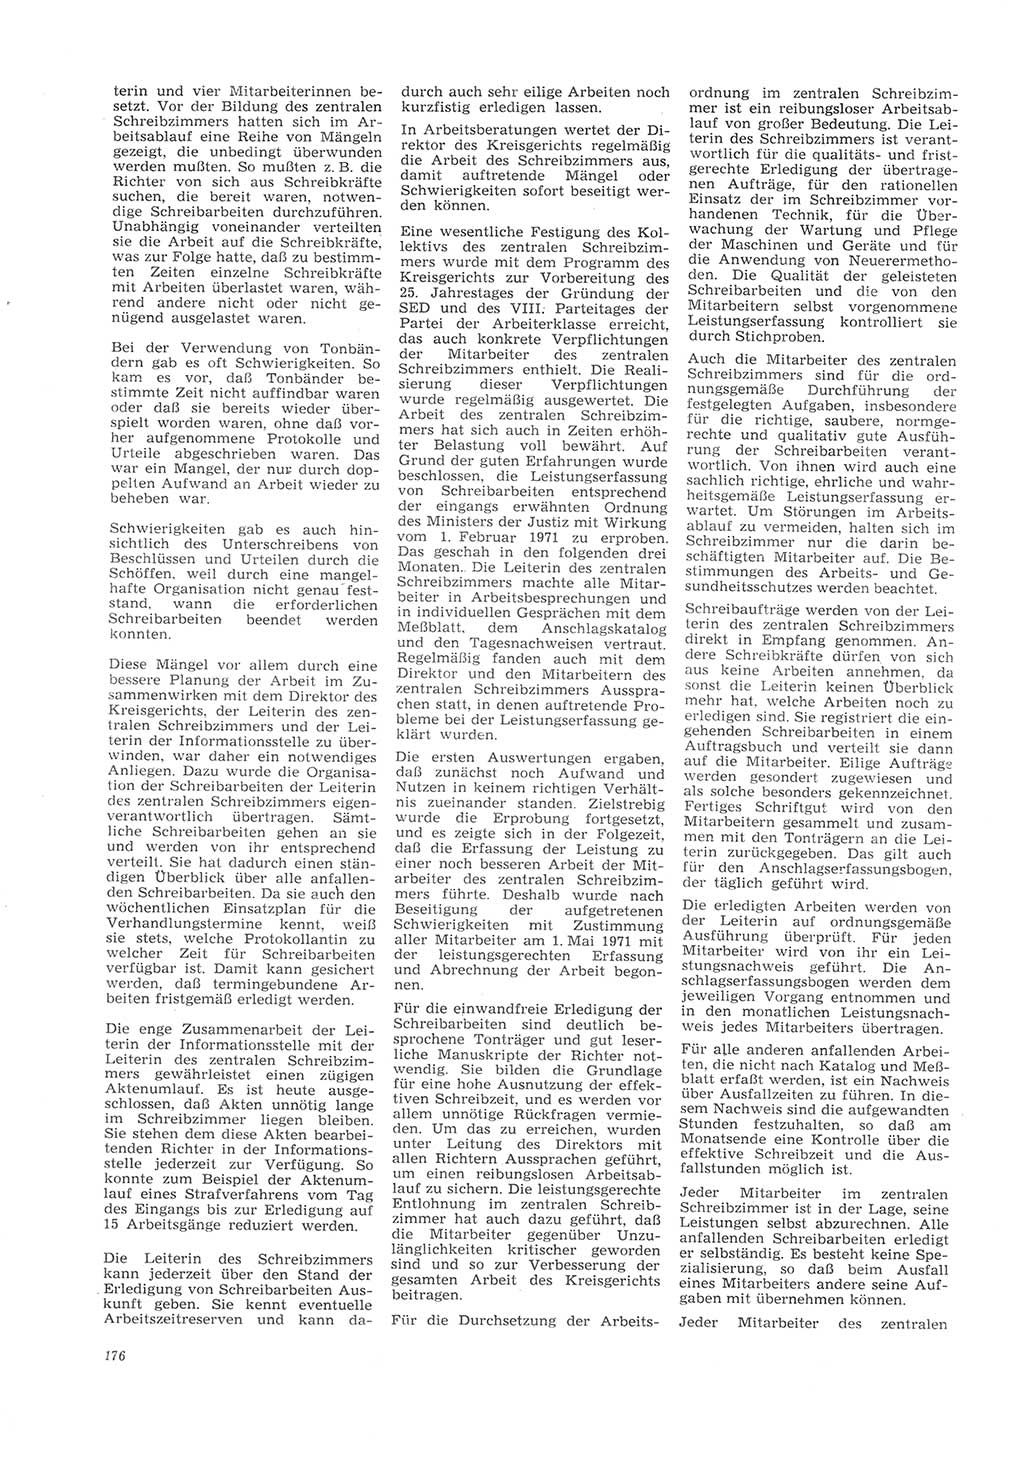 Neue Justiz (NJ), Zeitschrift für Recht und Rechtswissenschaft [Deutsche Demokratische Republik (DDR)], 26. Jahrgang 1972, Seite 176 (NJ DDR 1972, S. 176)